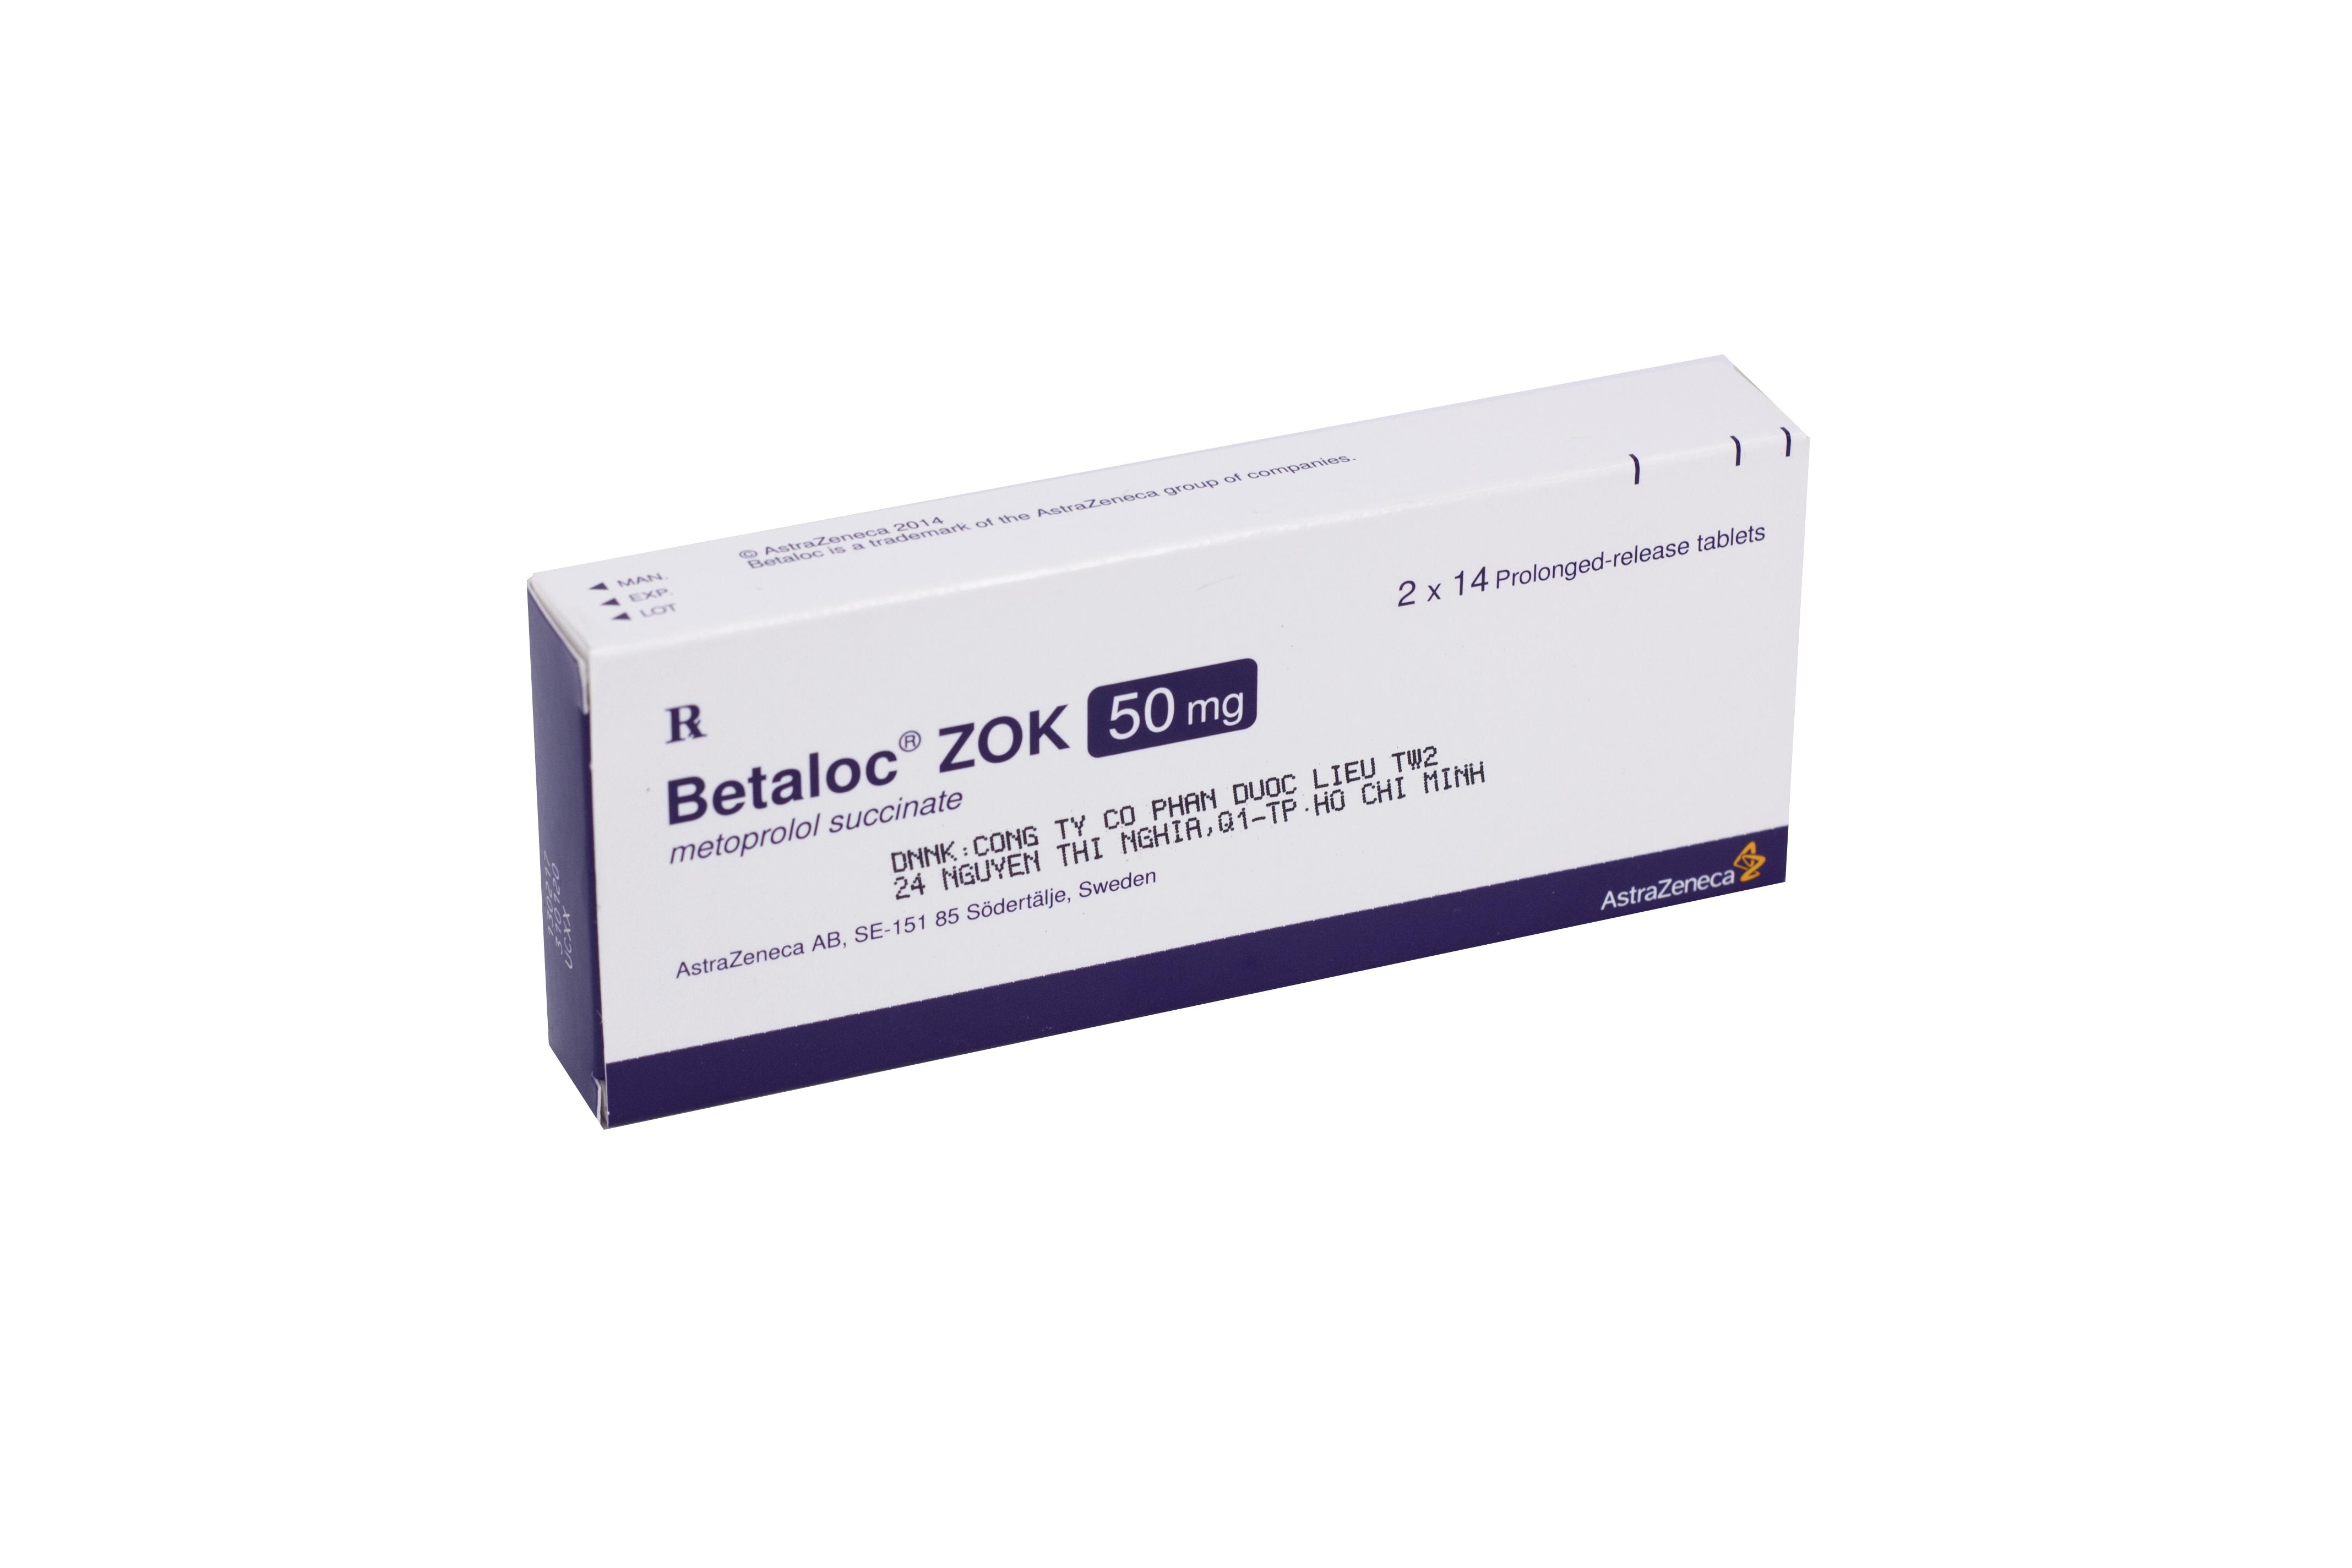 Betaloc Zok 50mg (Metoprolol) Astrazeneca (H/28v)